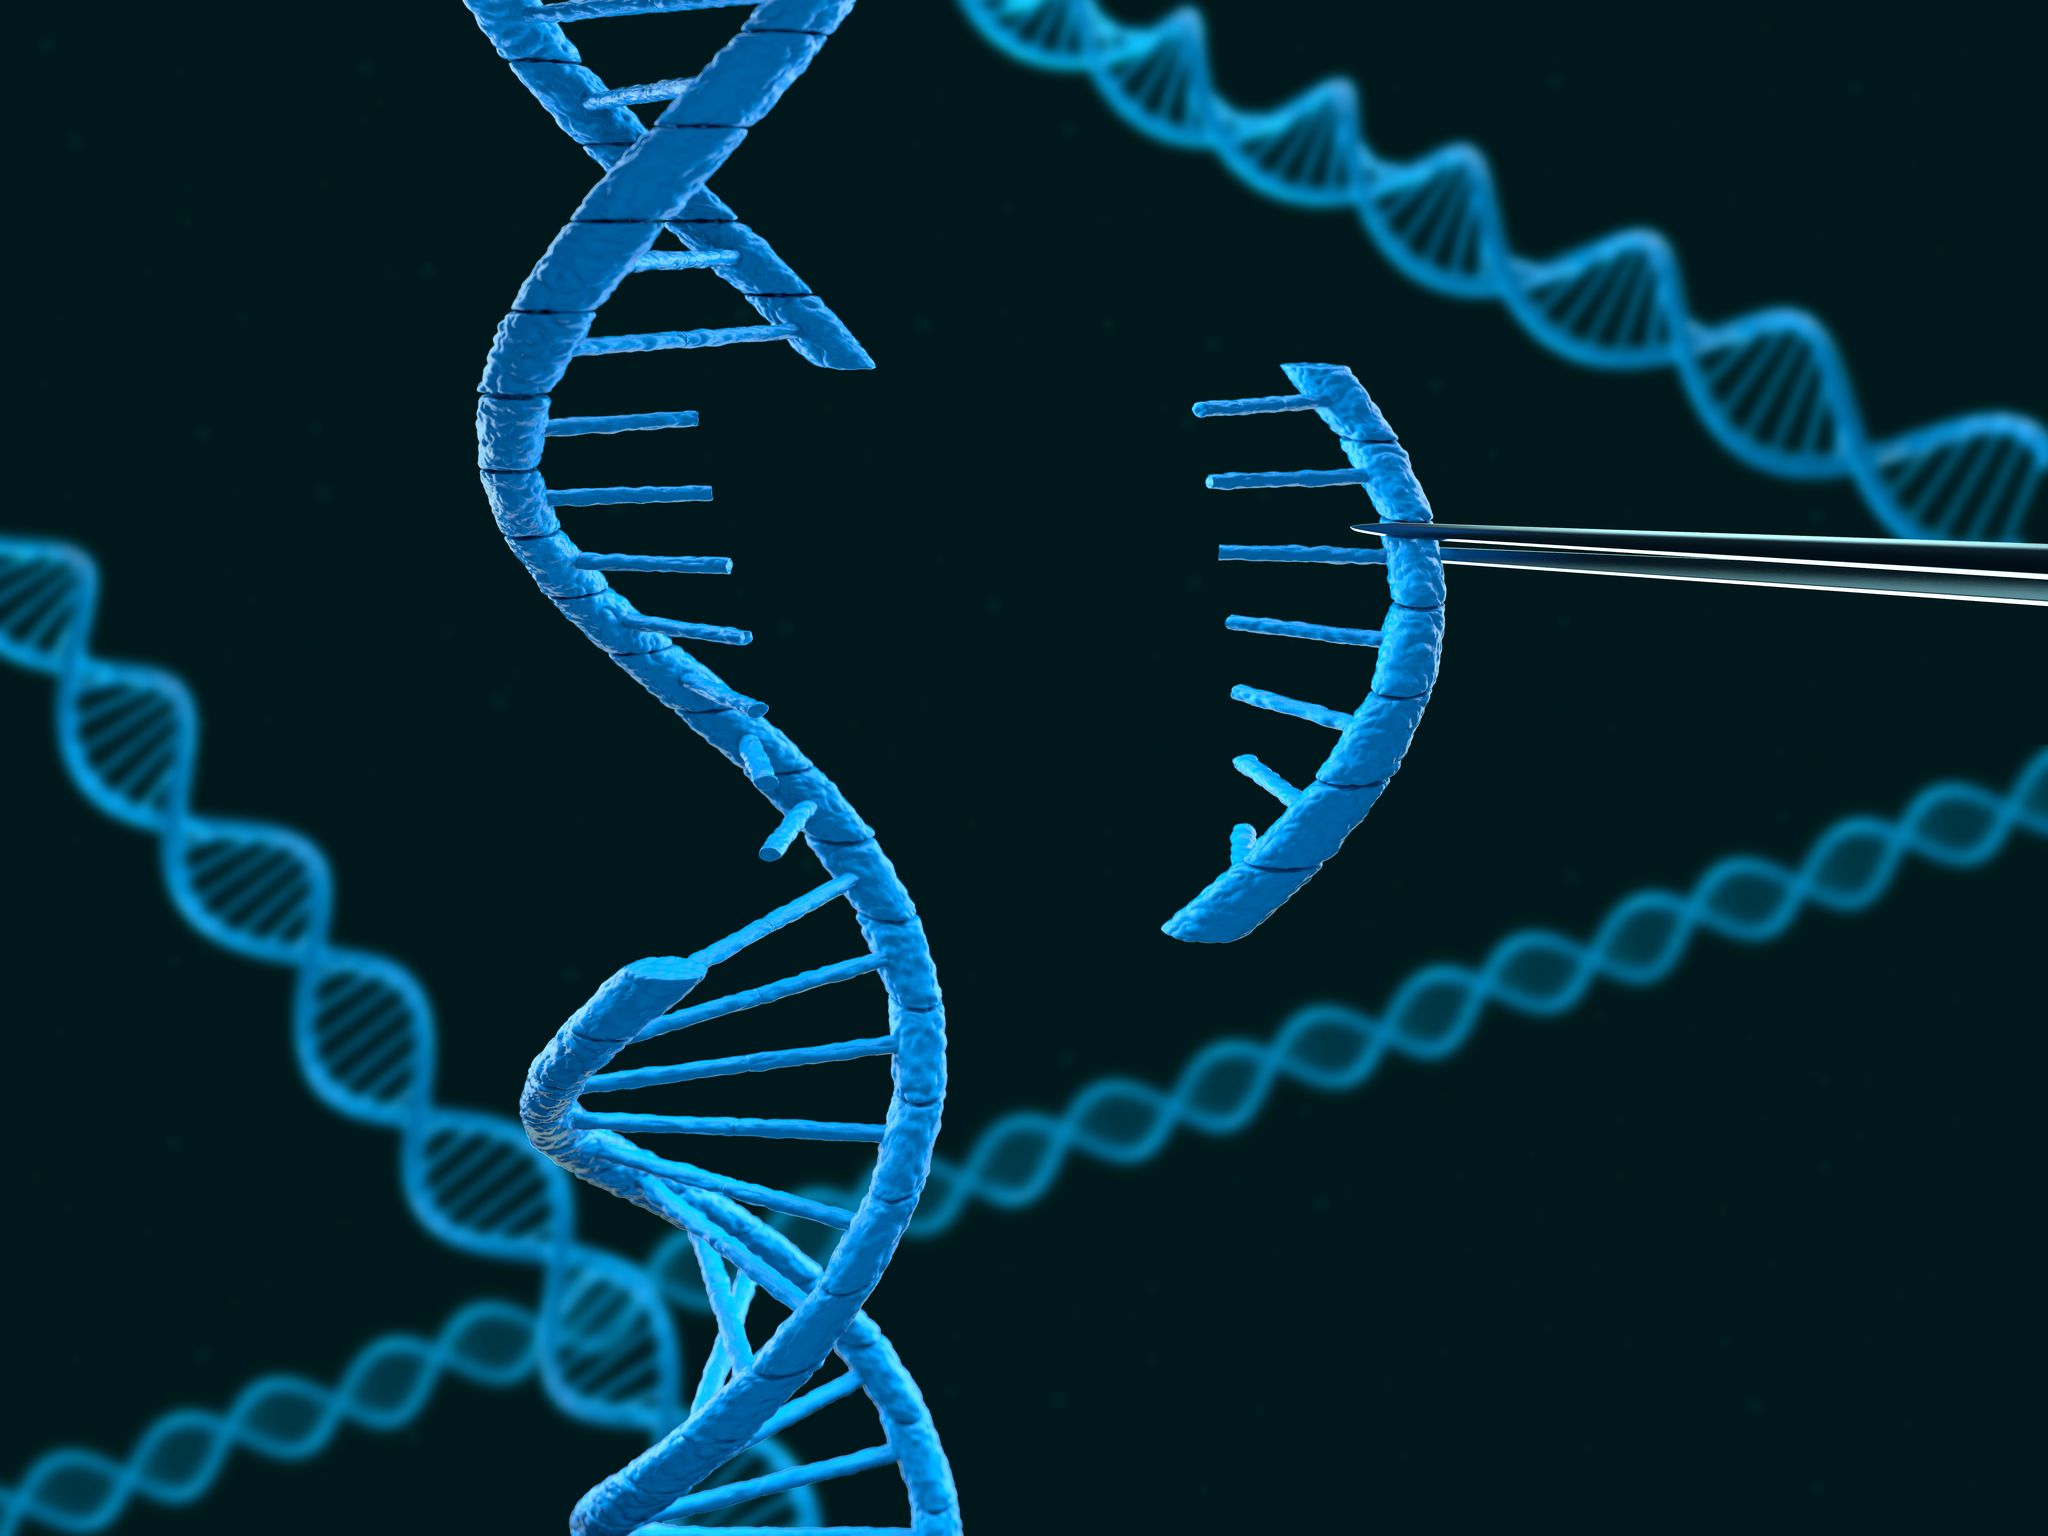 Удваивается молекула днк. ДНК гены геном. Генетика и генная инженерия. Мутированное ДНК. Молекула ДНК.